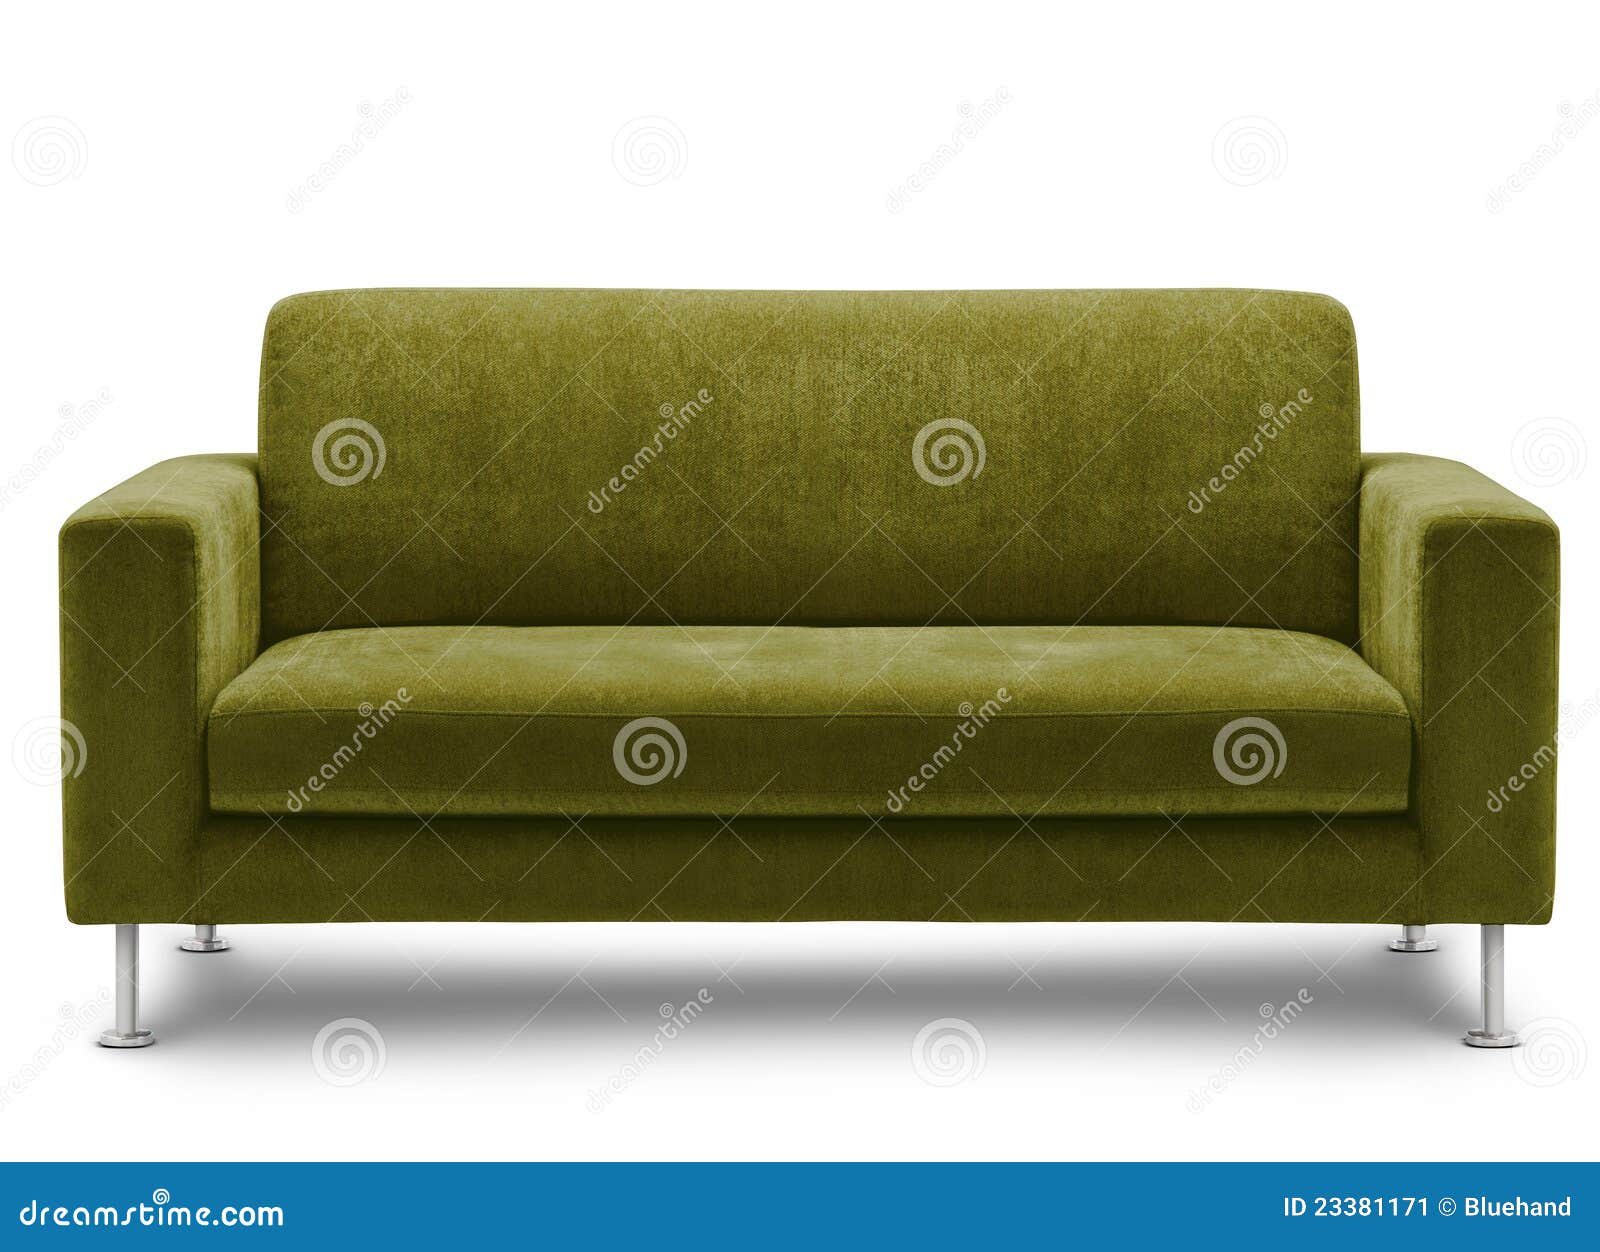 Green Velvet Couch Design Ideas